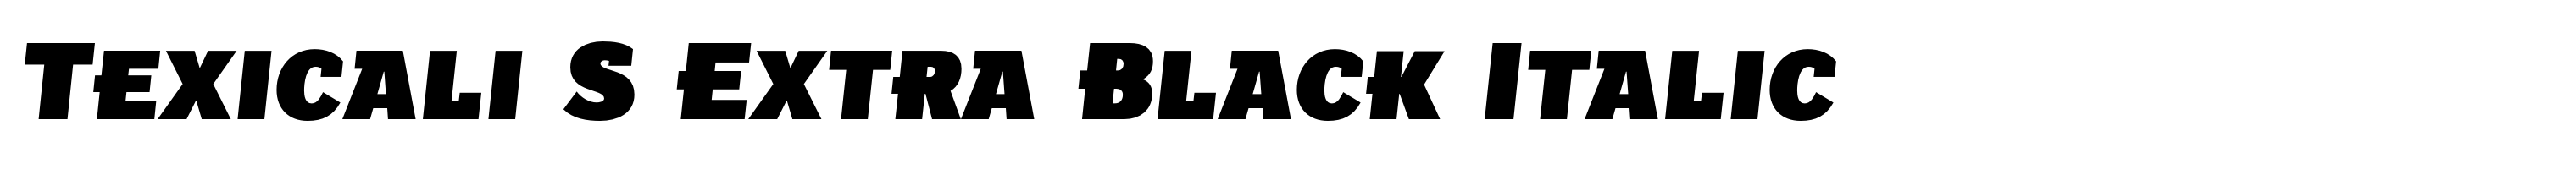 Texicali S Extra Black Italic